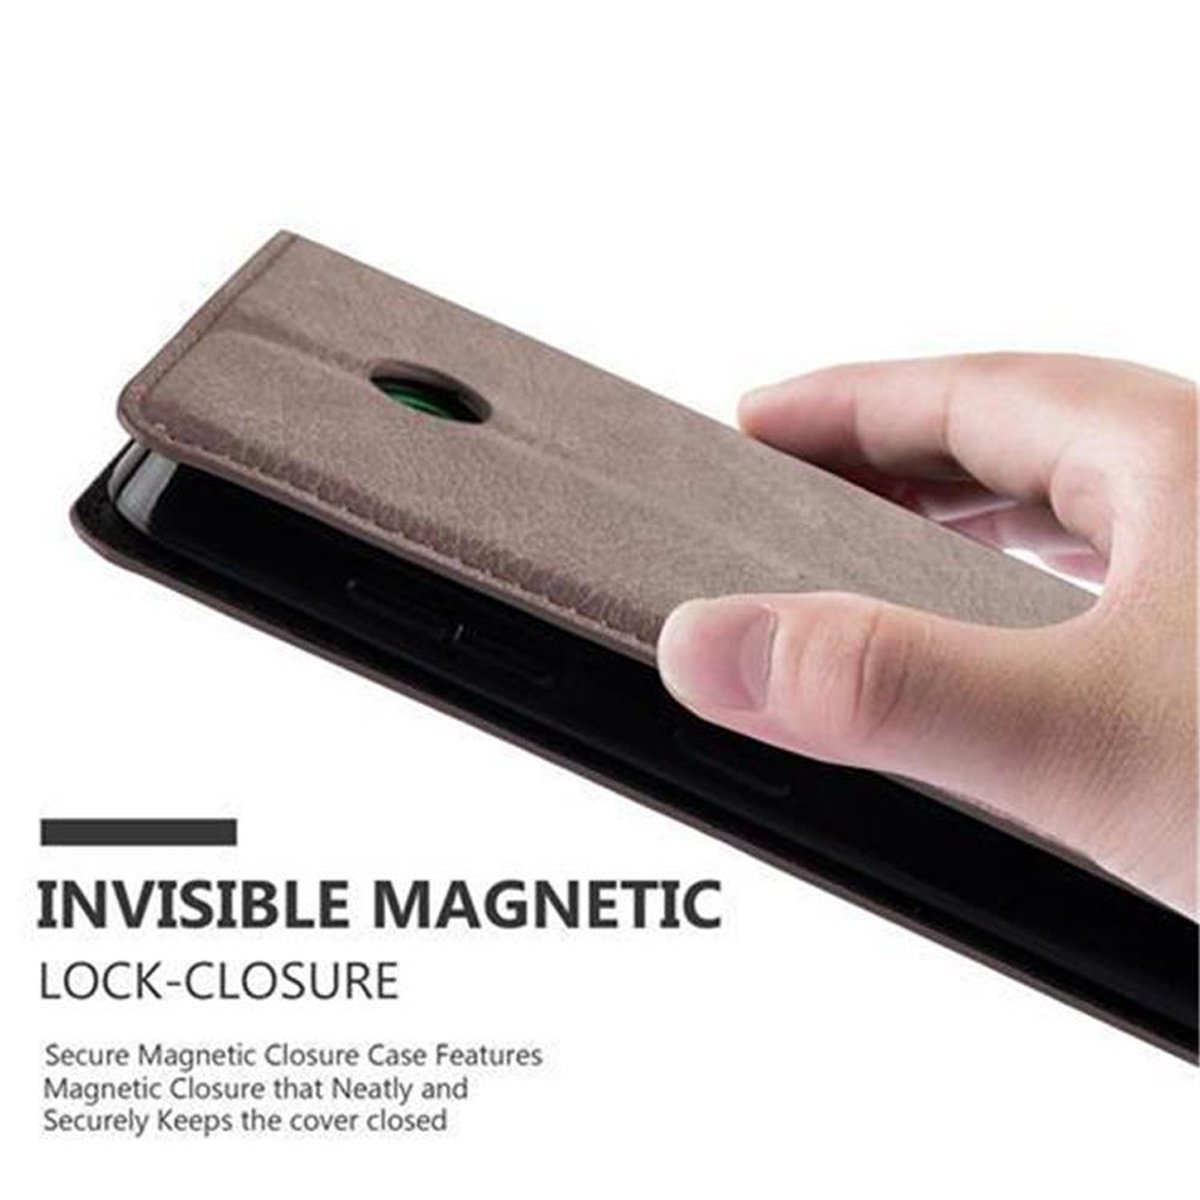 CADORABO 635, 630 BRAUN Book Invisible Magnet, KAFFEE Bookcover, / Lumia Hülle Nokia,